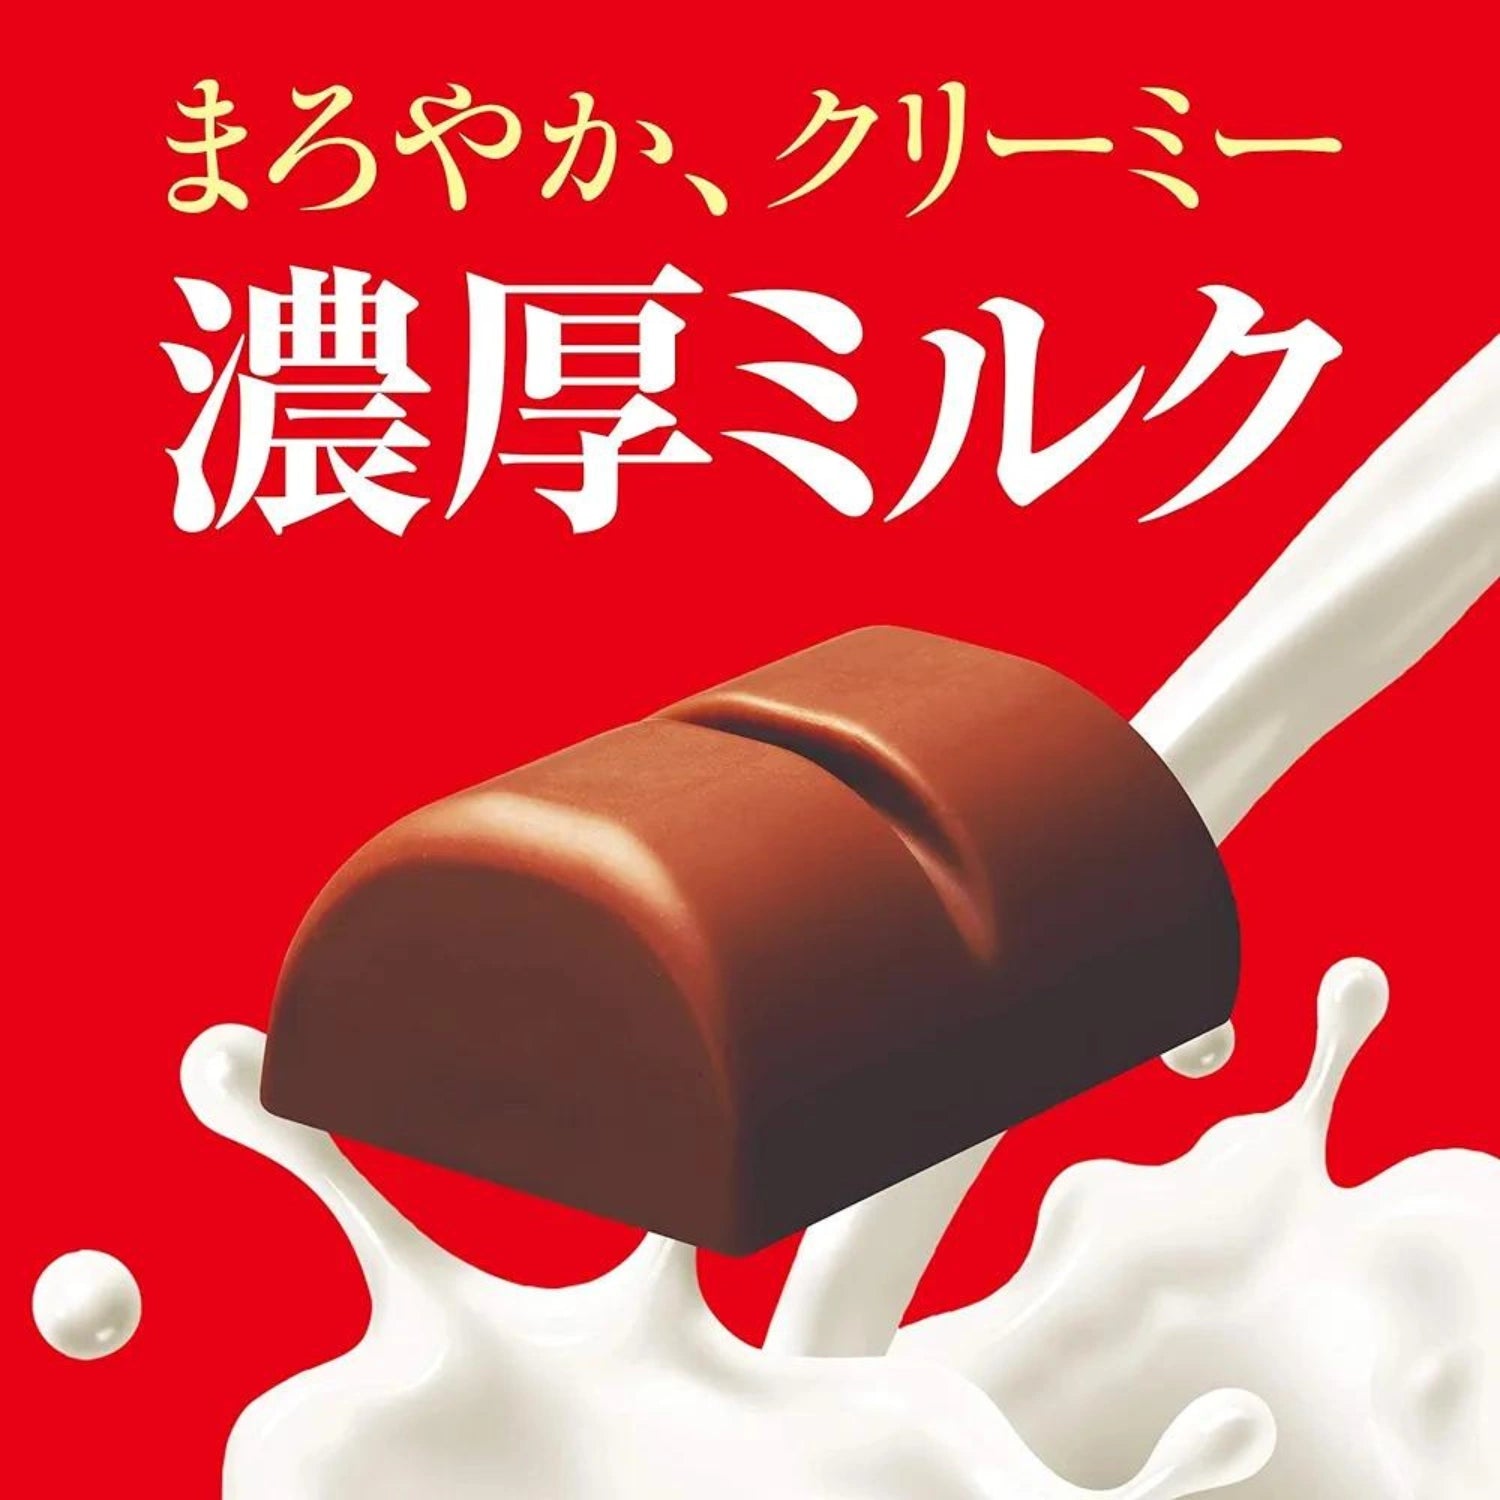 Glico Kobe Roasted Milk Chocolate 170g (23 Pieces) - Buy Me Japan